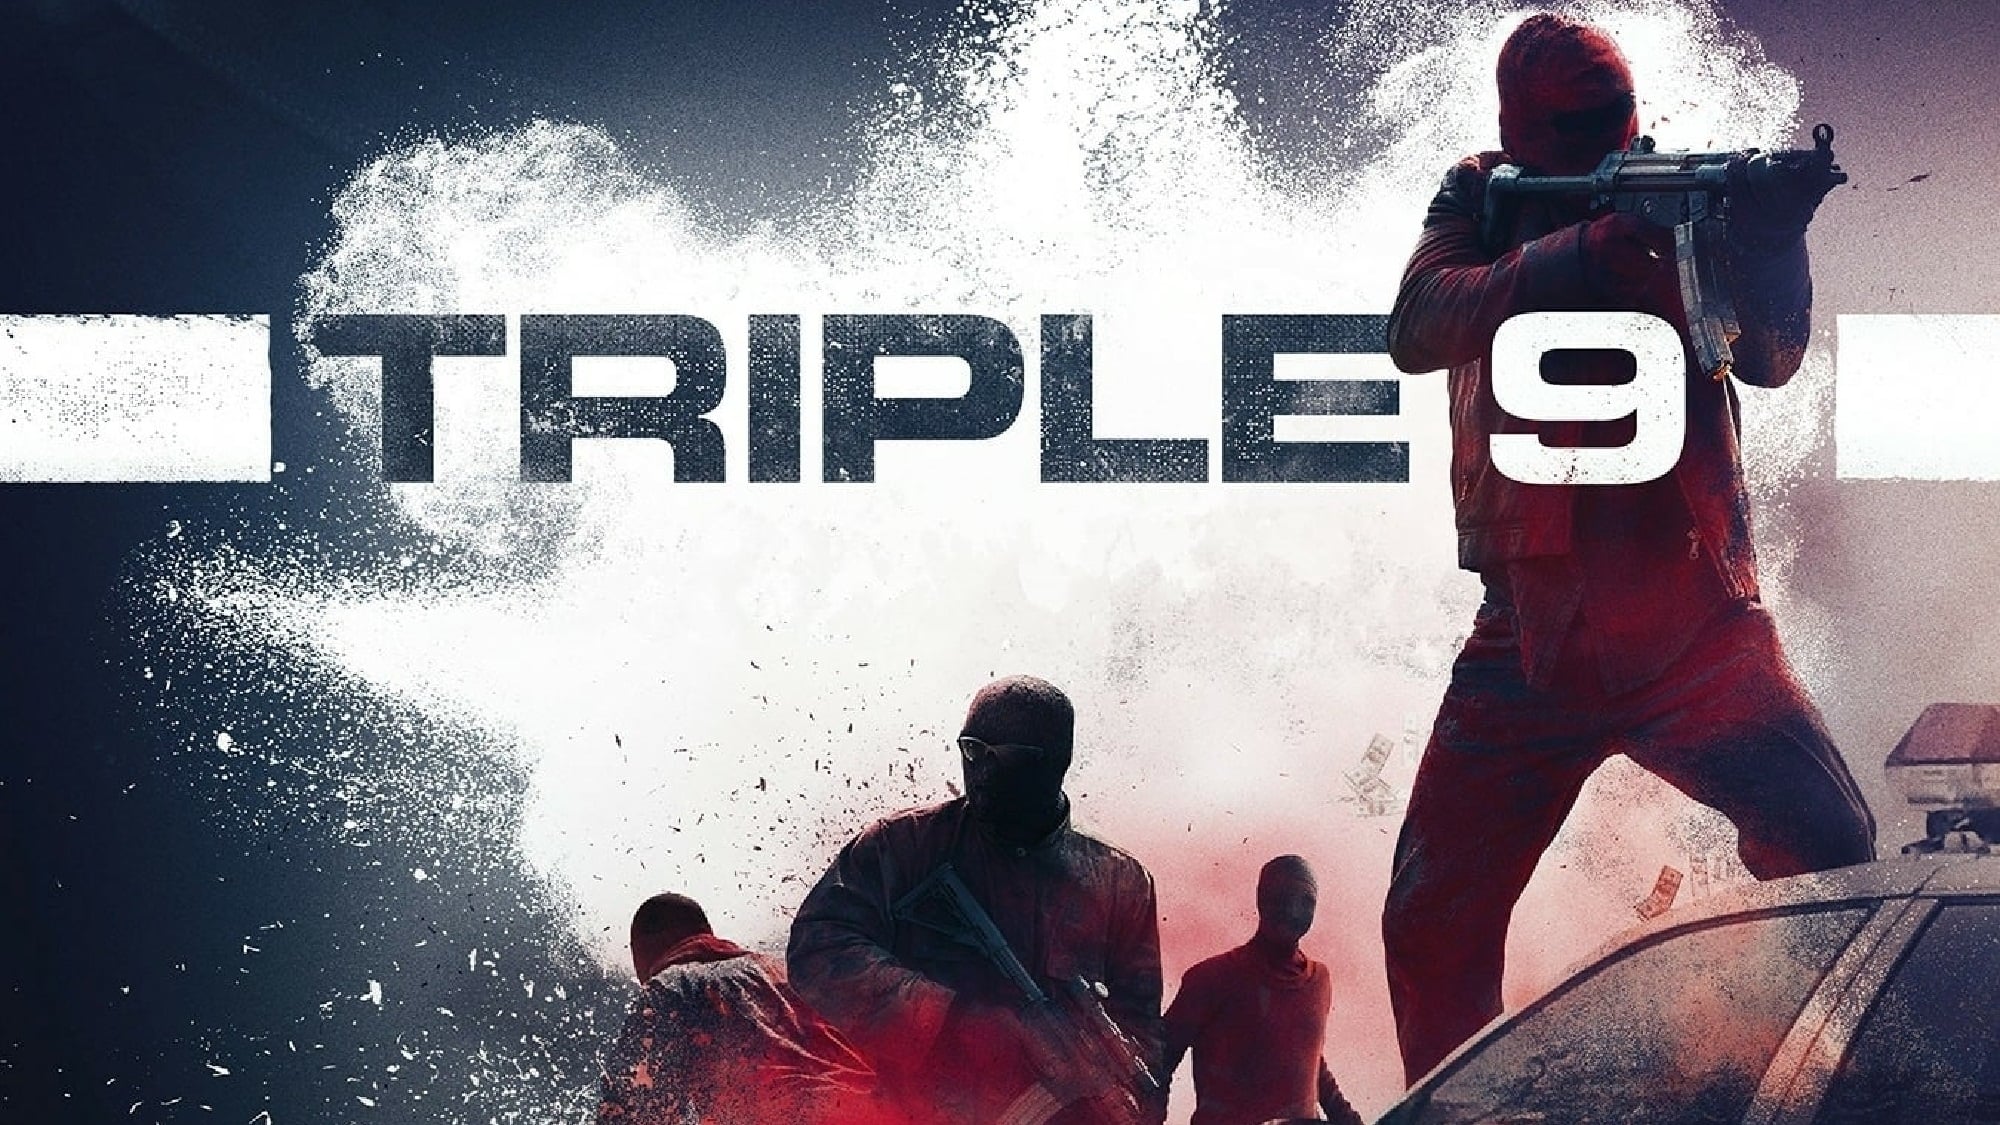 Triple 9 (2016)